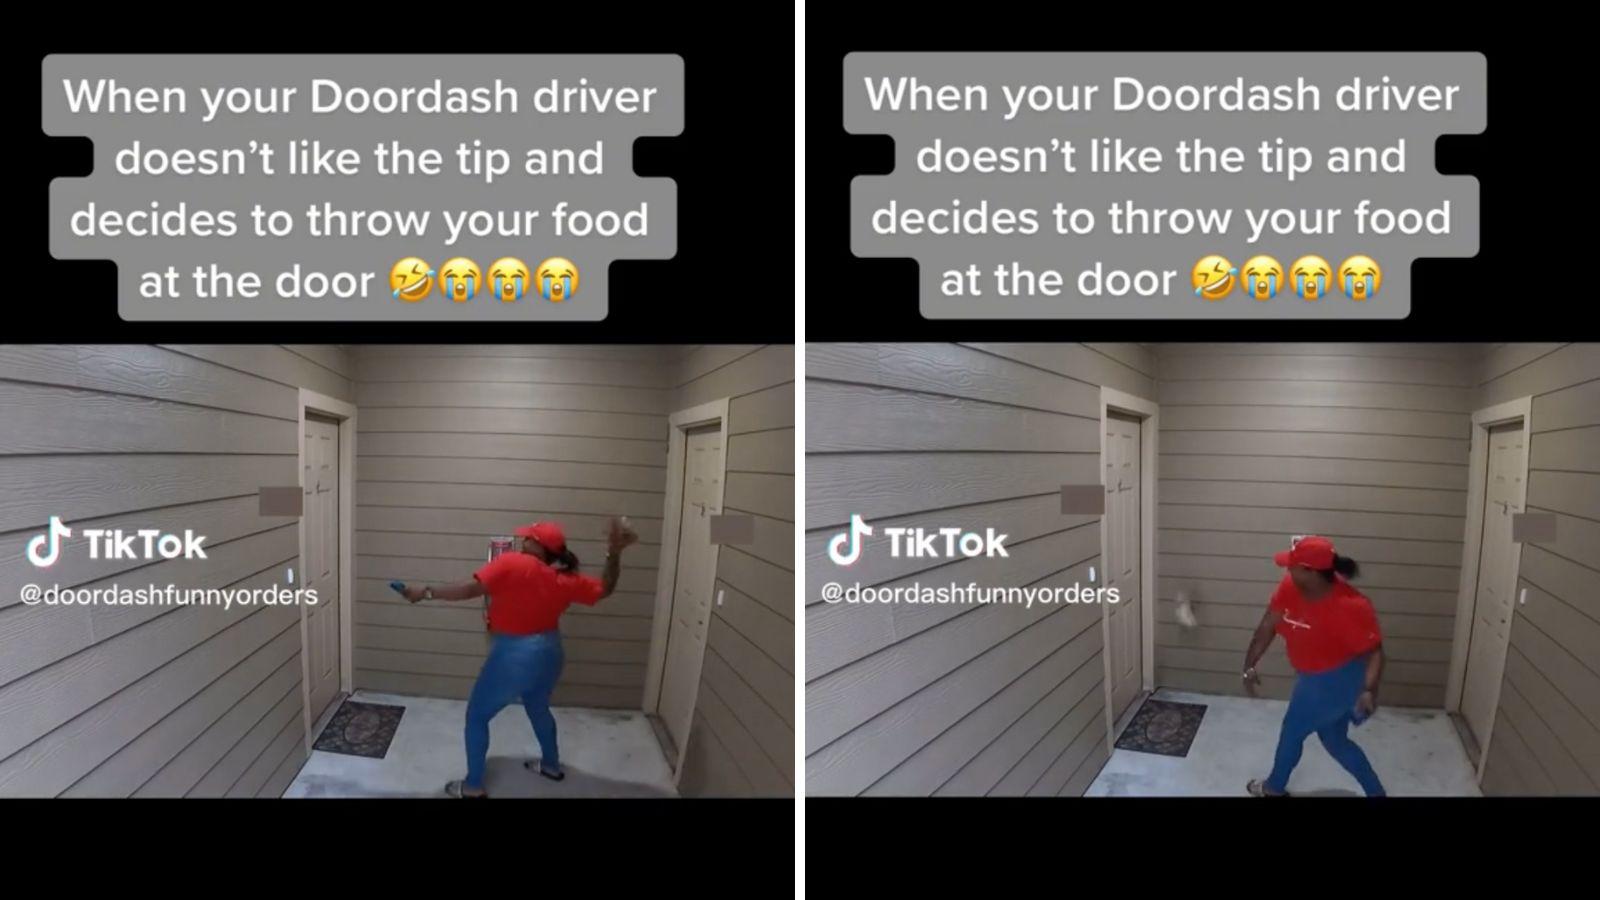 Doordash Drivers